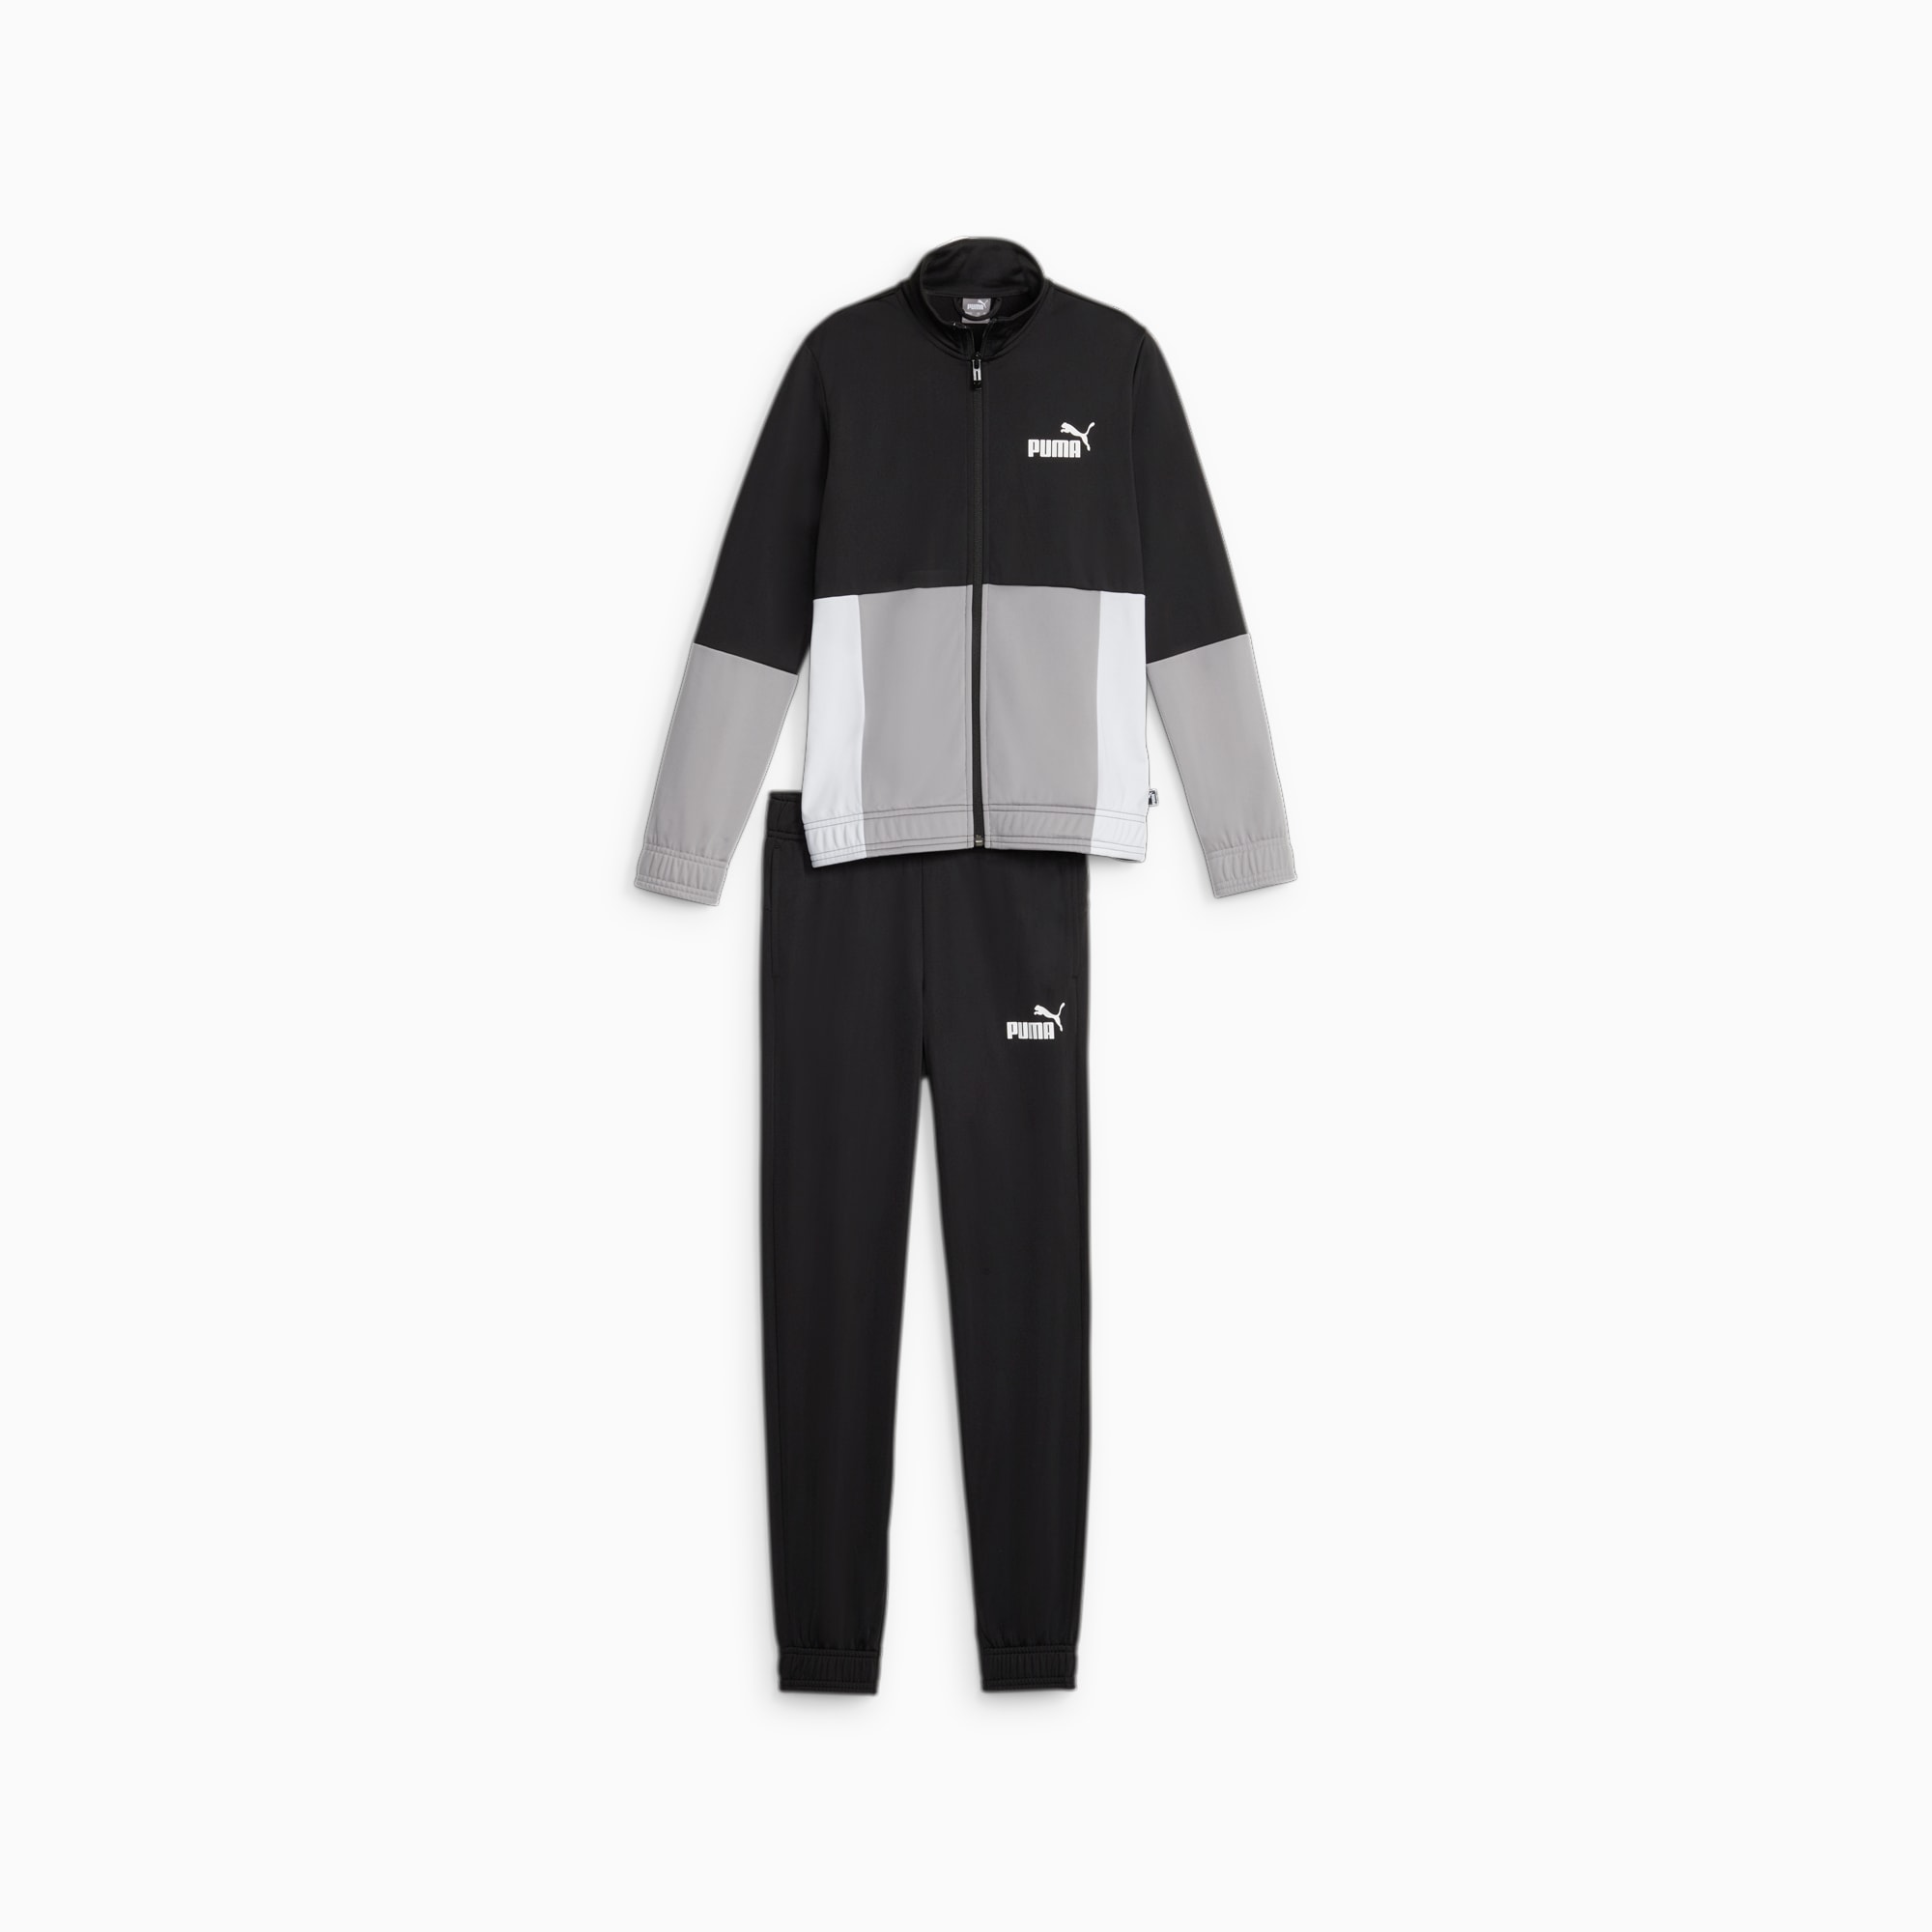 PUMA Colourblock Poly Suit Teenager Für Kinder, Schwarz, Größe: 128, Kleidung